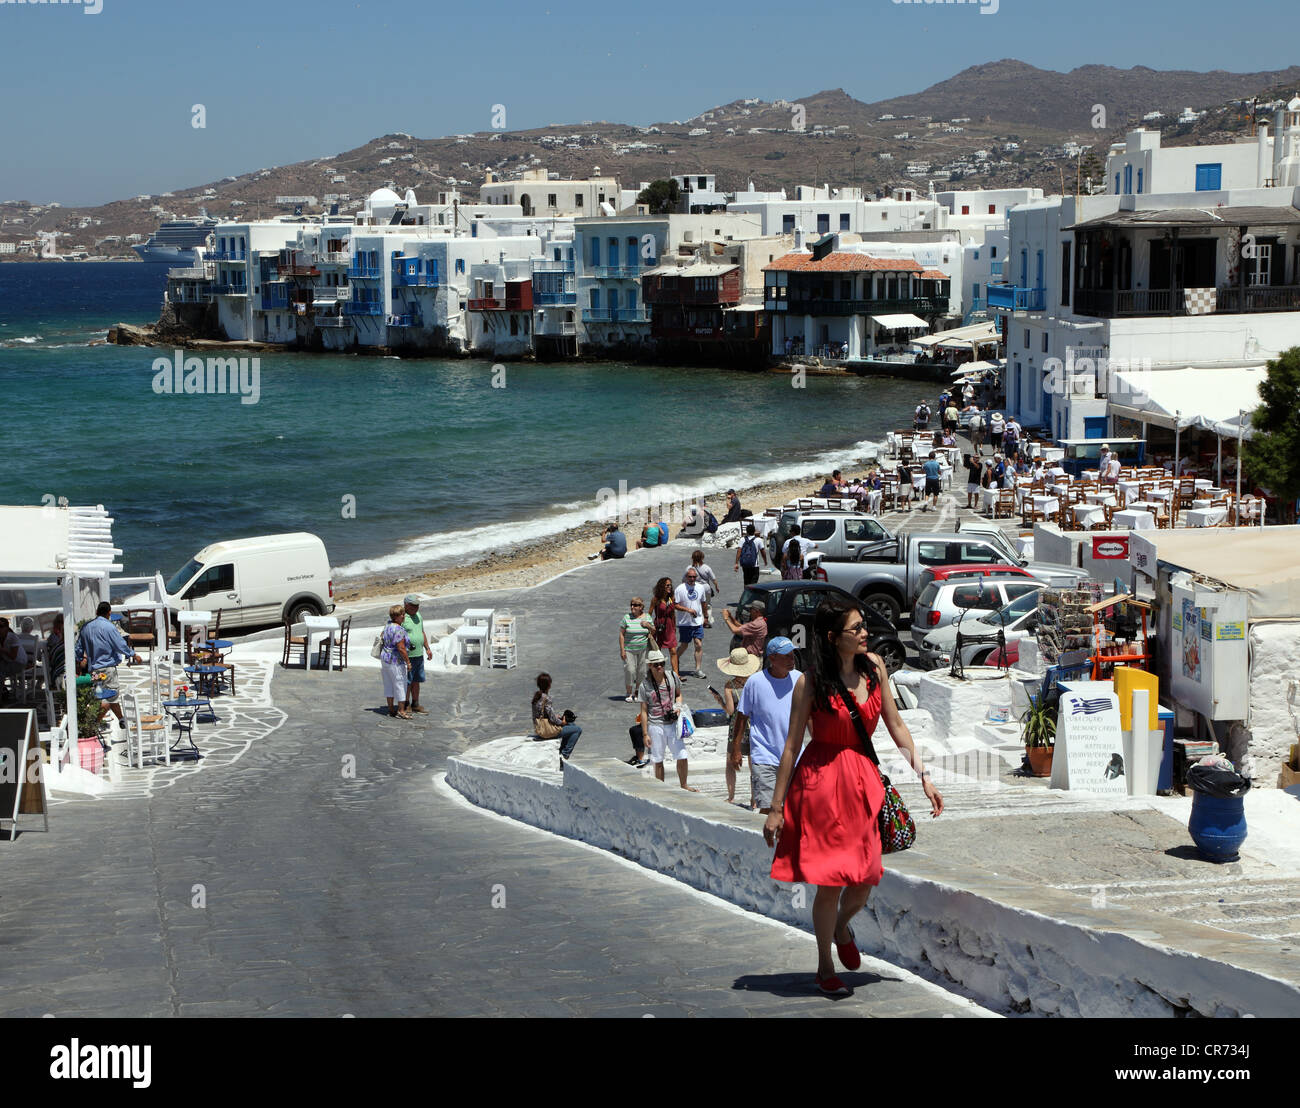 Le front de mer, à Mykonos, l'une des îles des Cyclades, Mer Égée, Grèce Banque D'Images